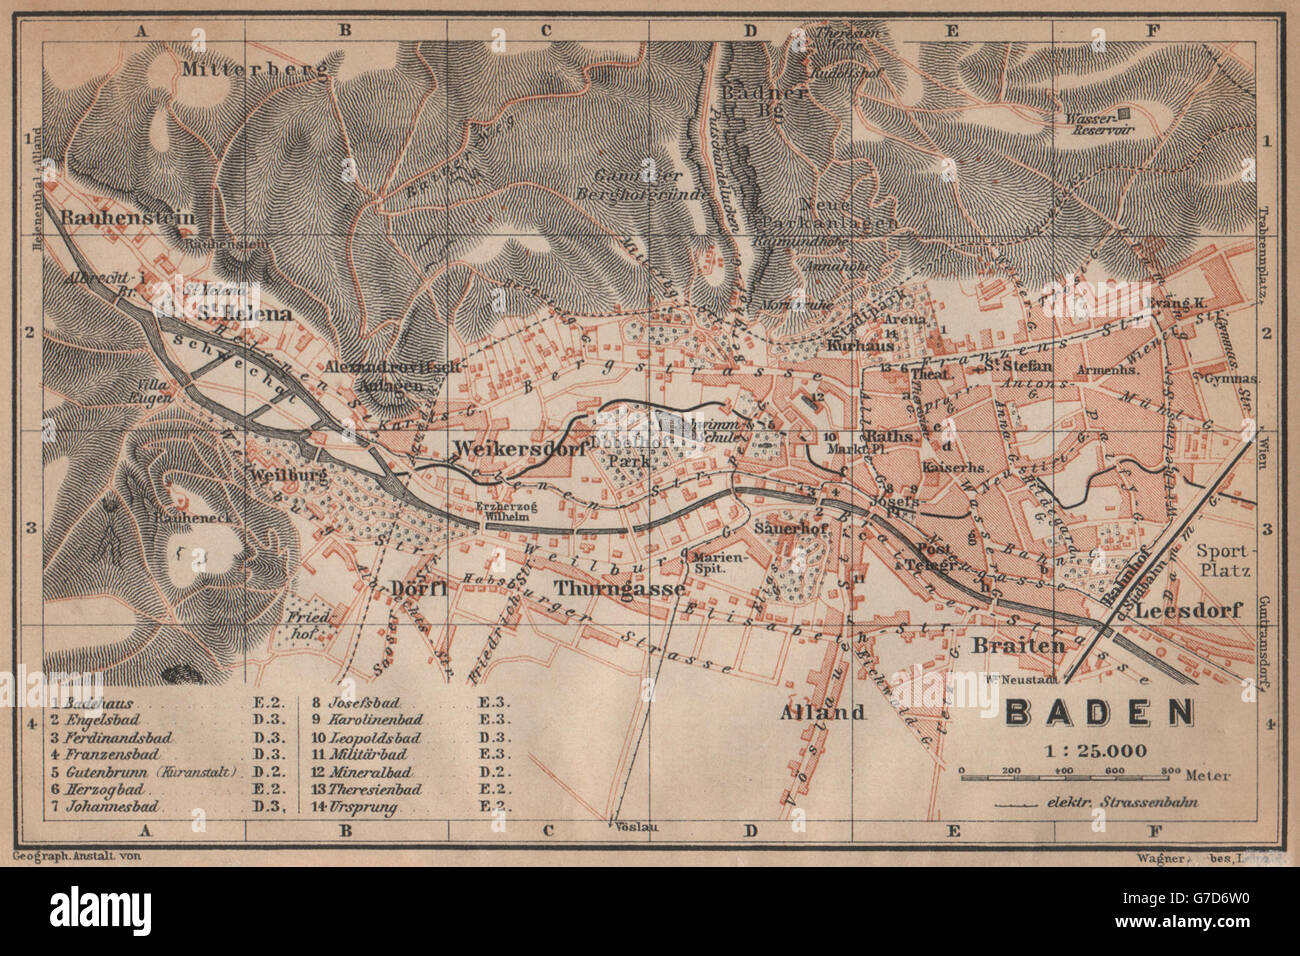 BADEN BEI WIEN /nr Vienna town city plan stadtplan. Austria Österreich, 1905 map Stock Photo